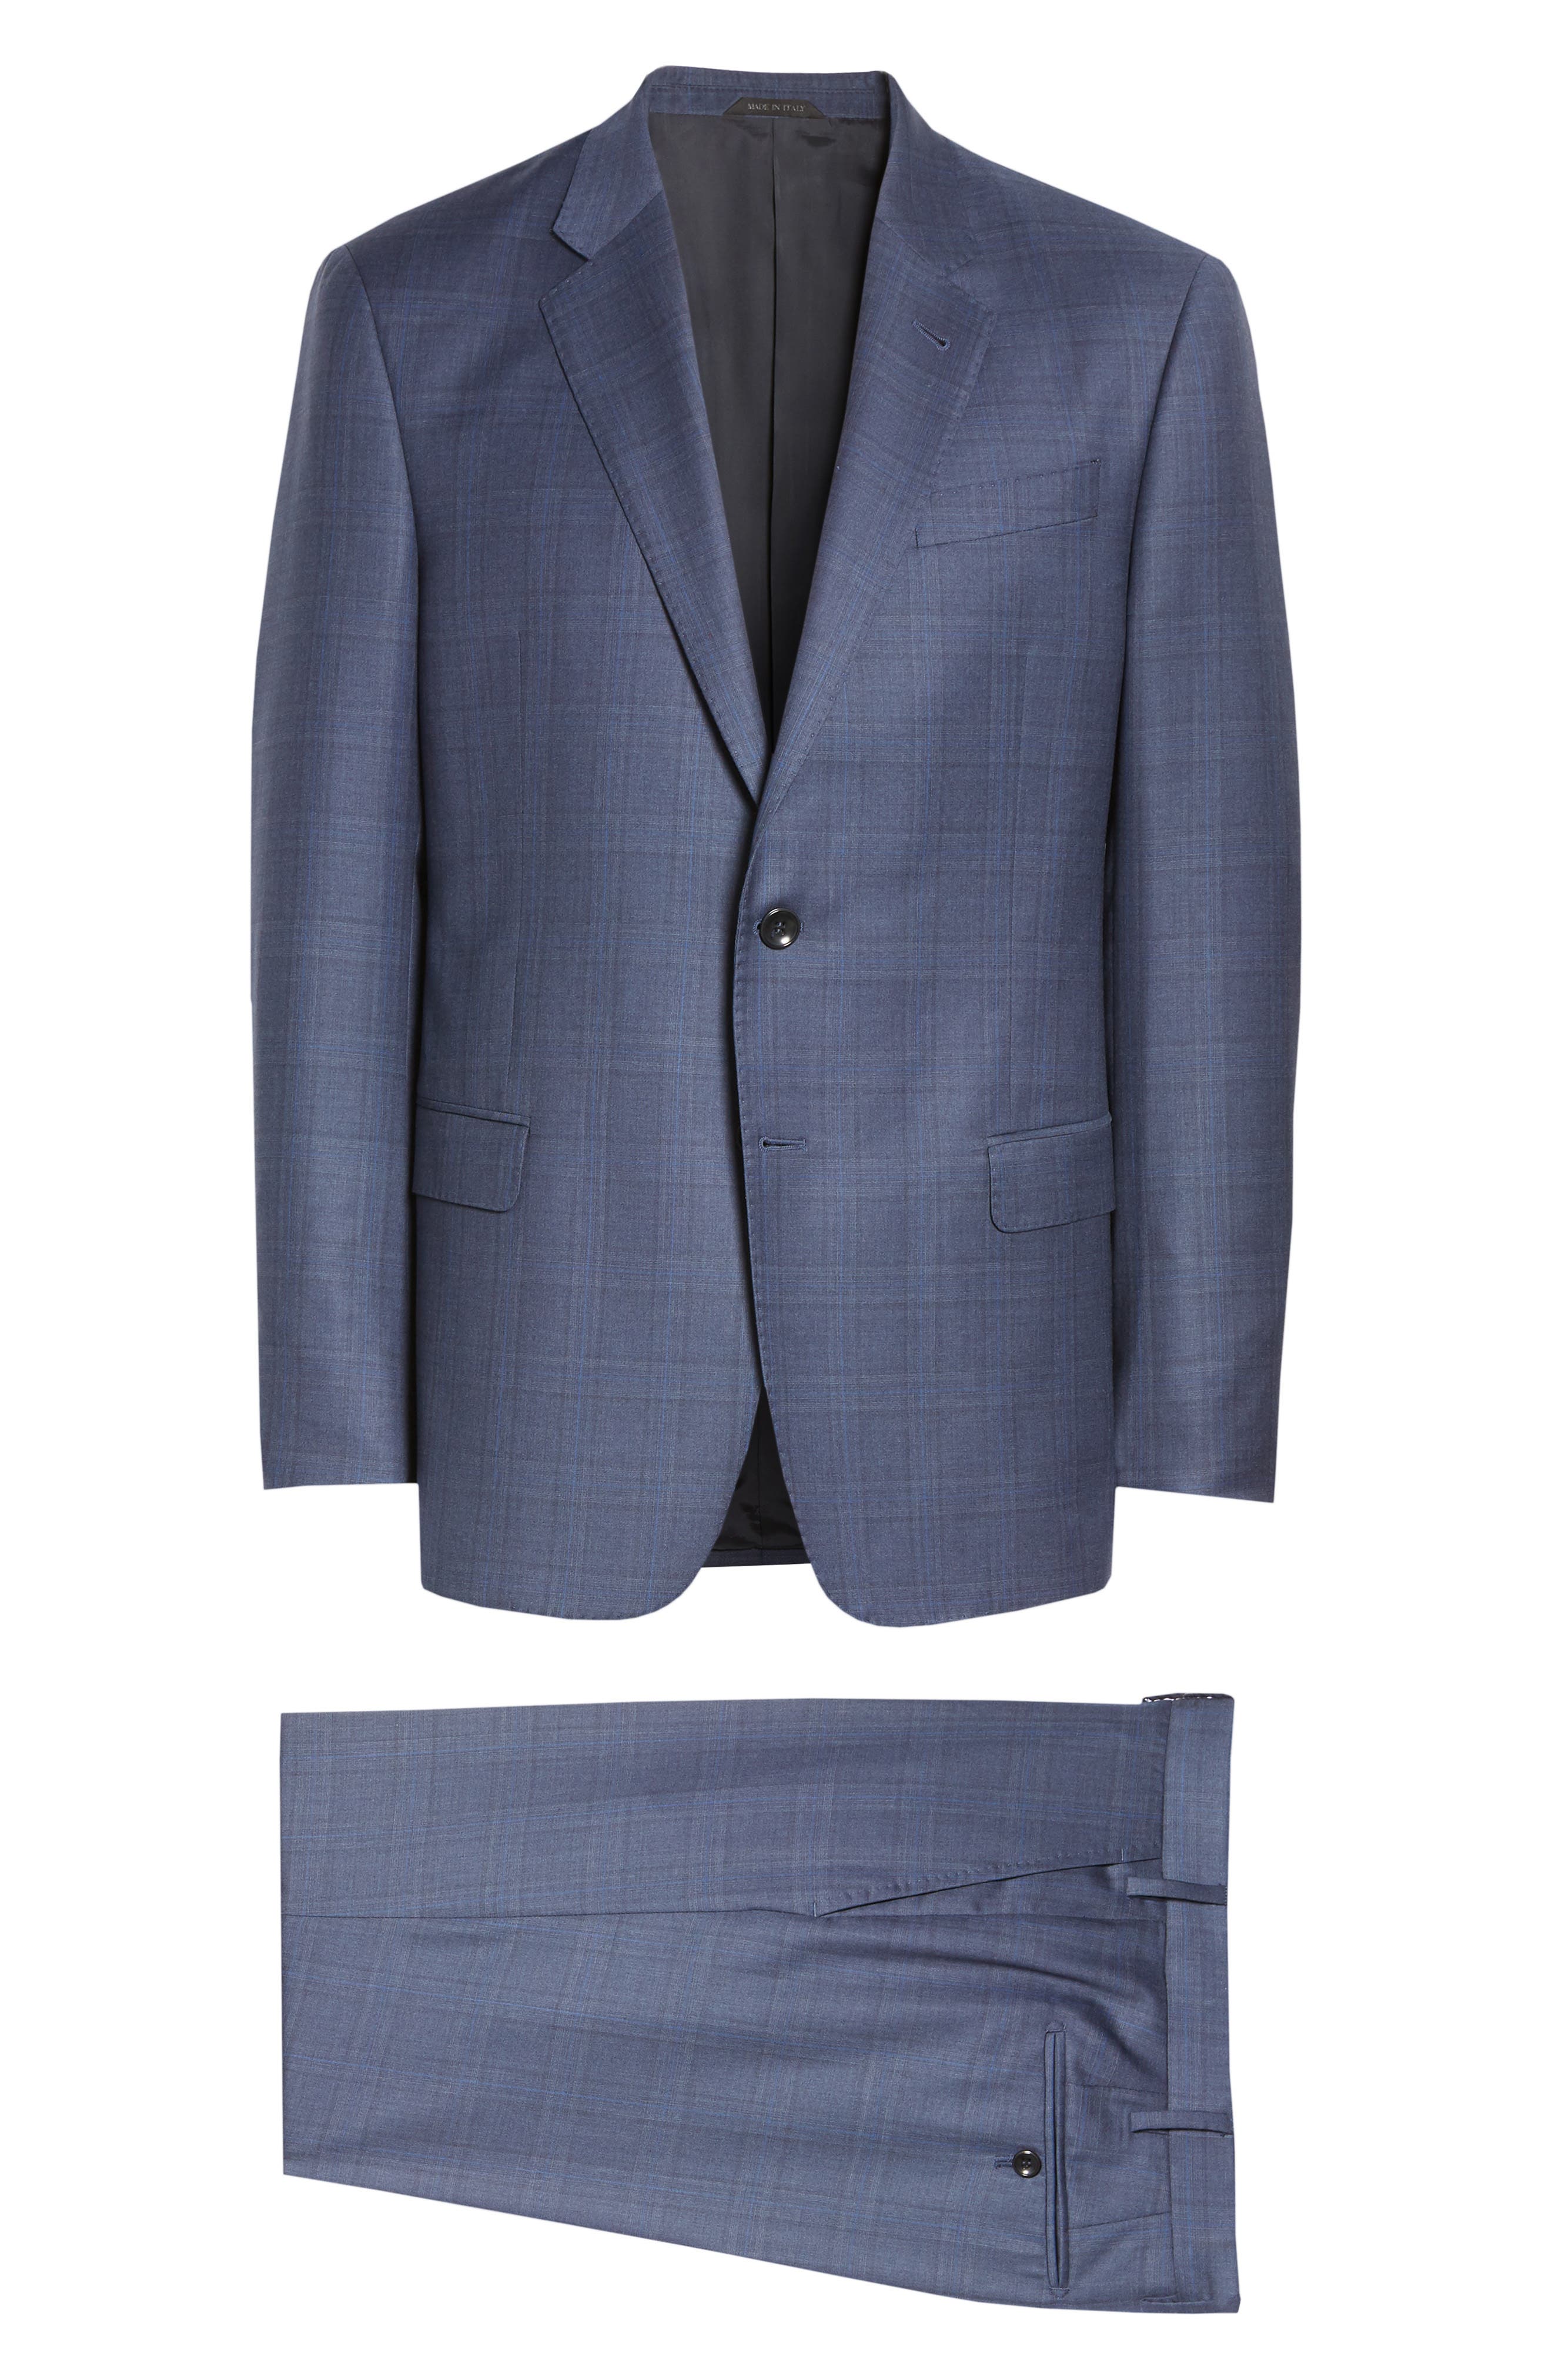 Men's Giorgio Armani Suits | Nordstrom